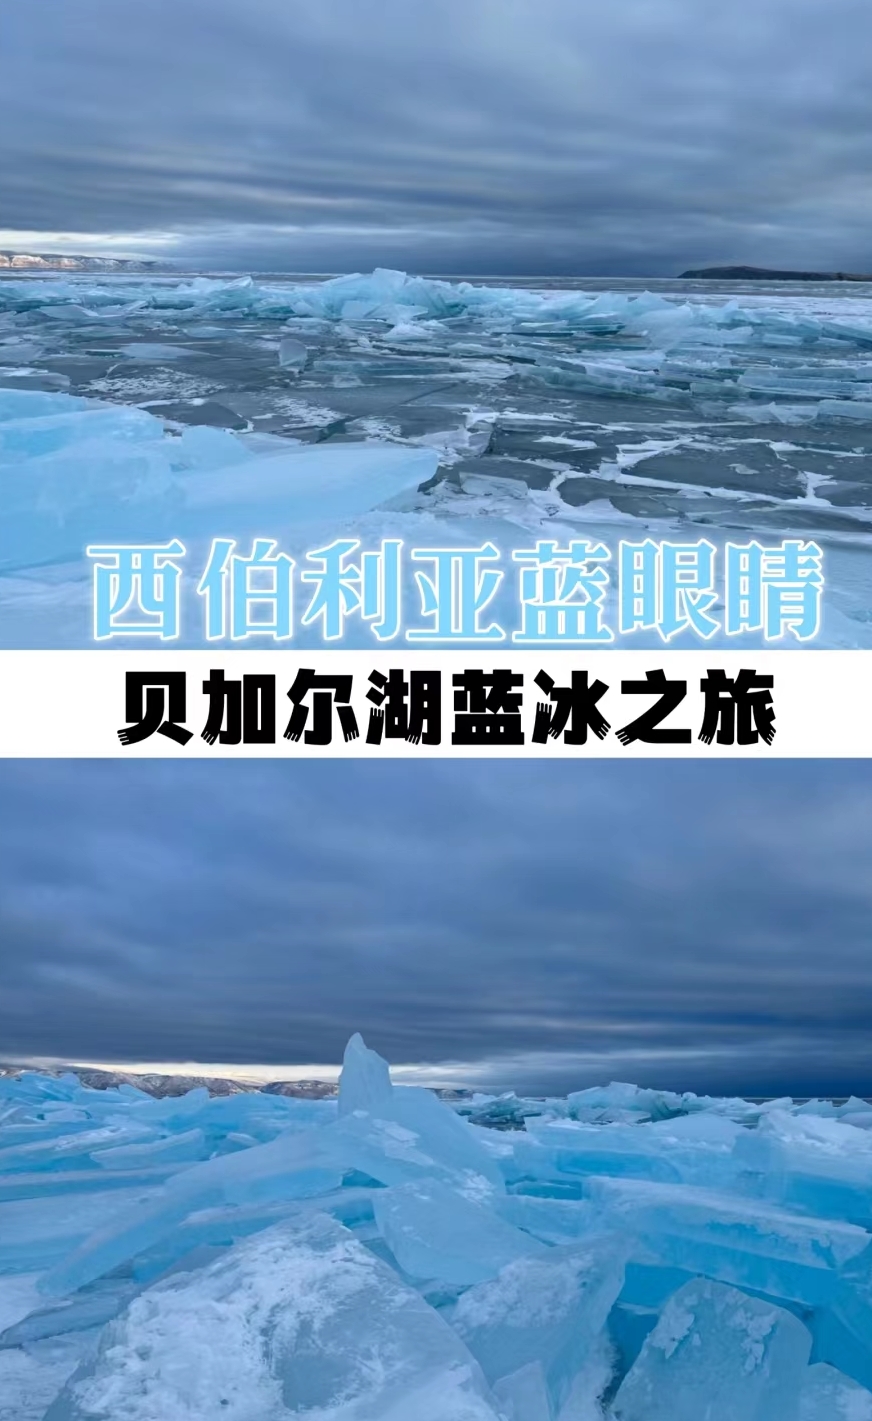 人生建议❄️一定要来贝加尔湖看蓝冰🧊错过再等一年